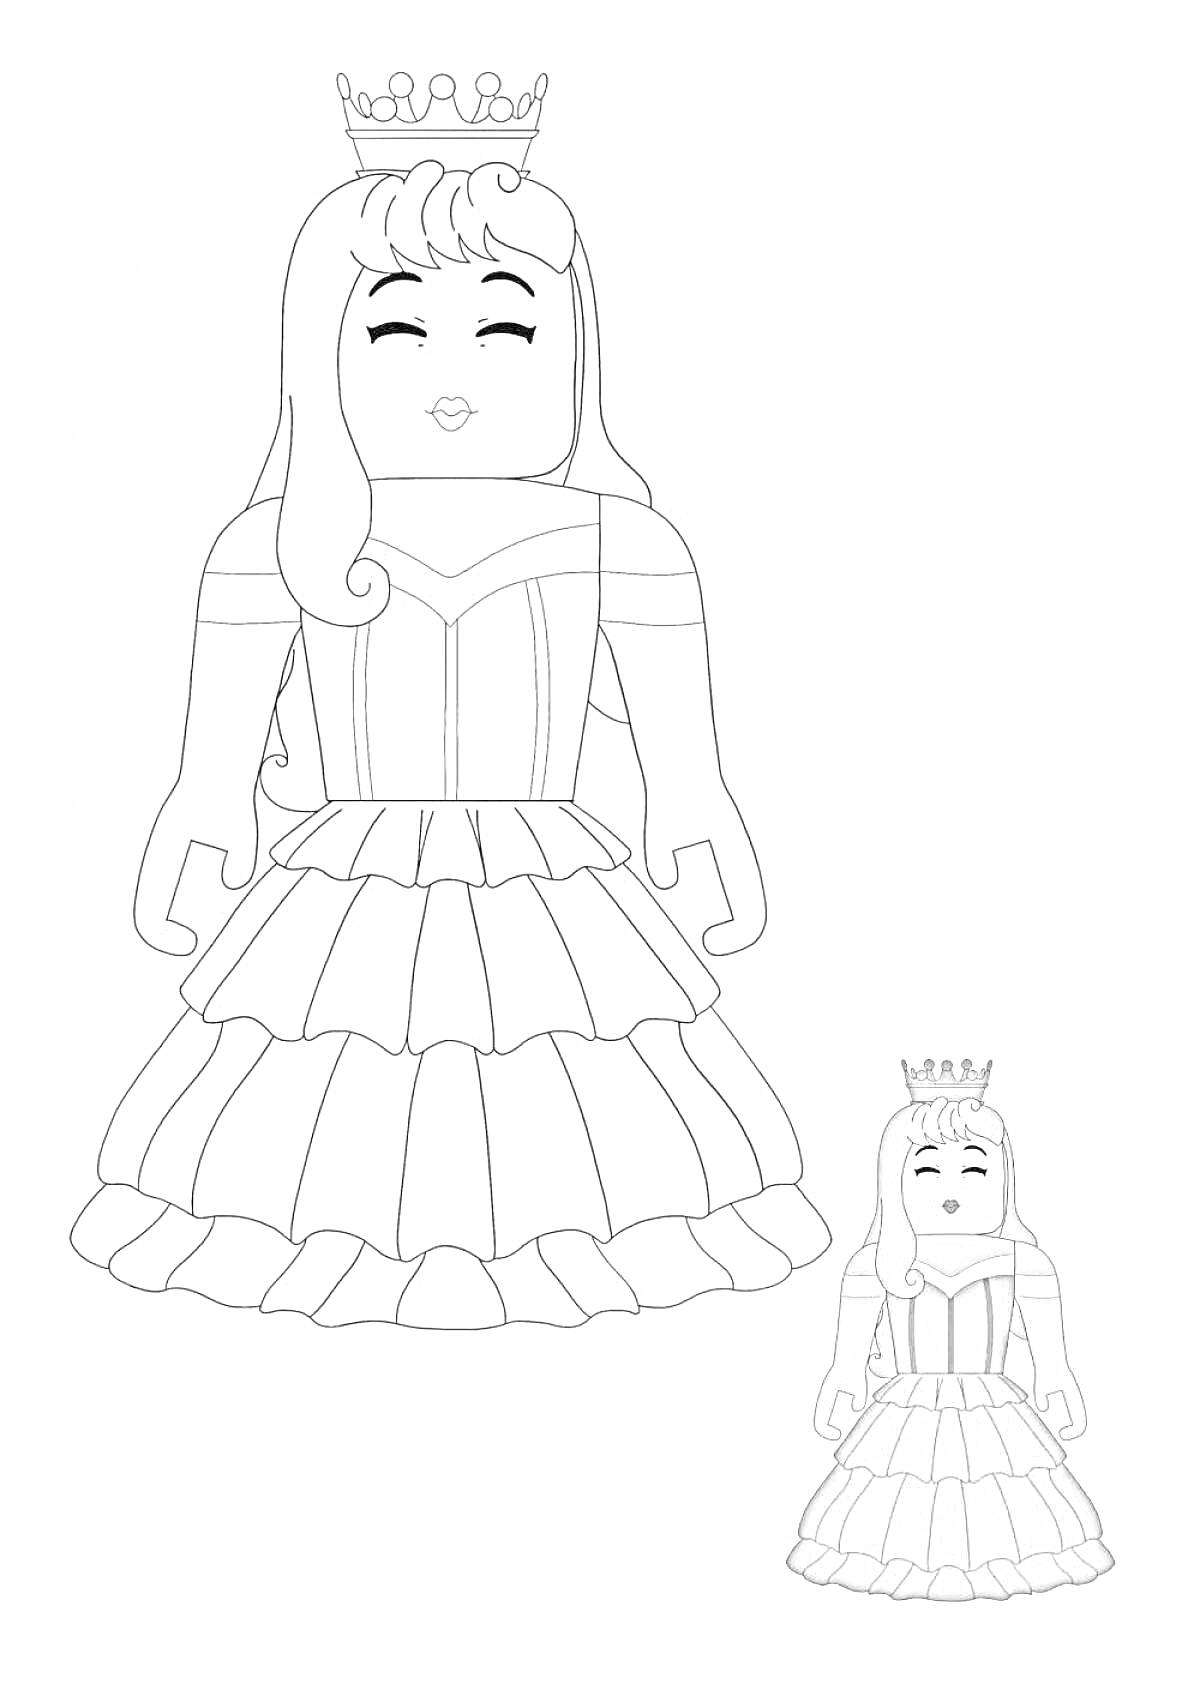 Раскраска Принцесса в платье со вьющимися волосами и короной, изображение персонажа роблокс для девочек